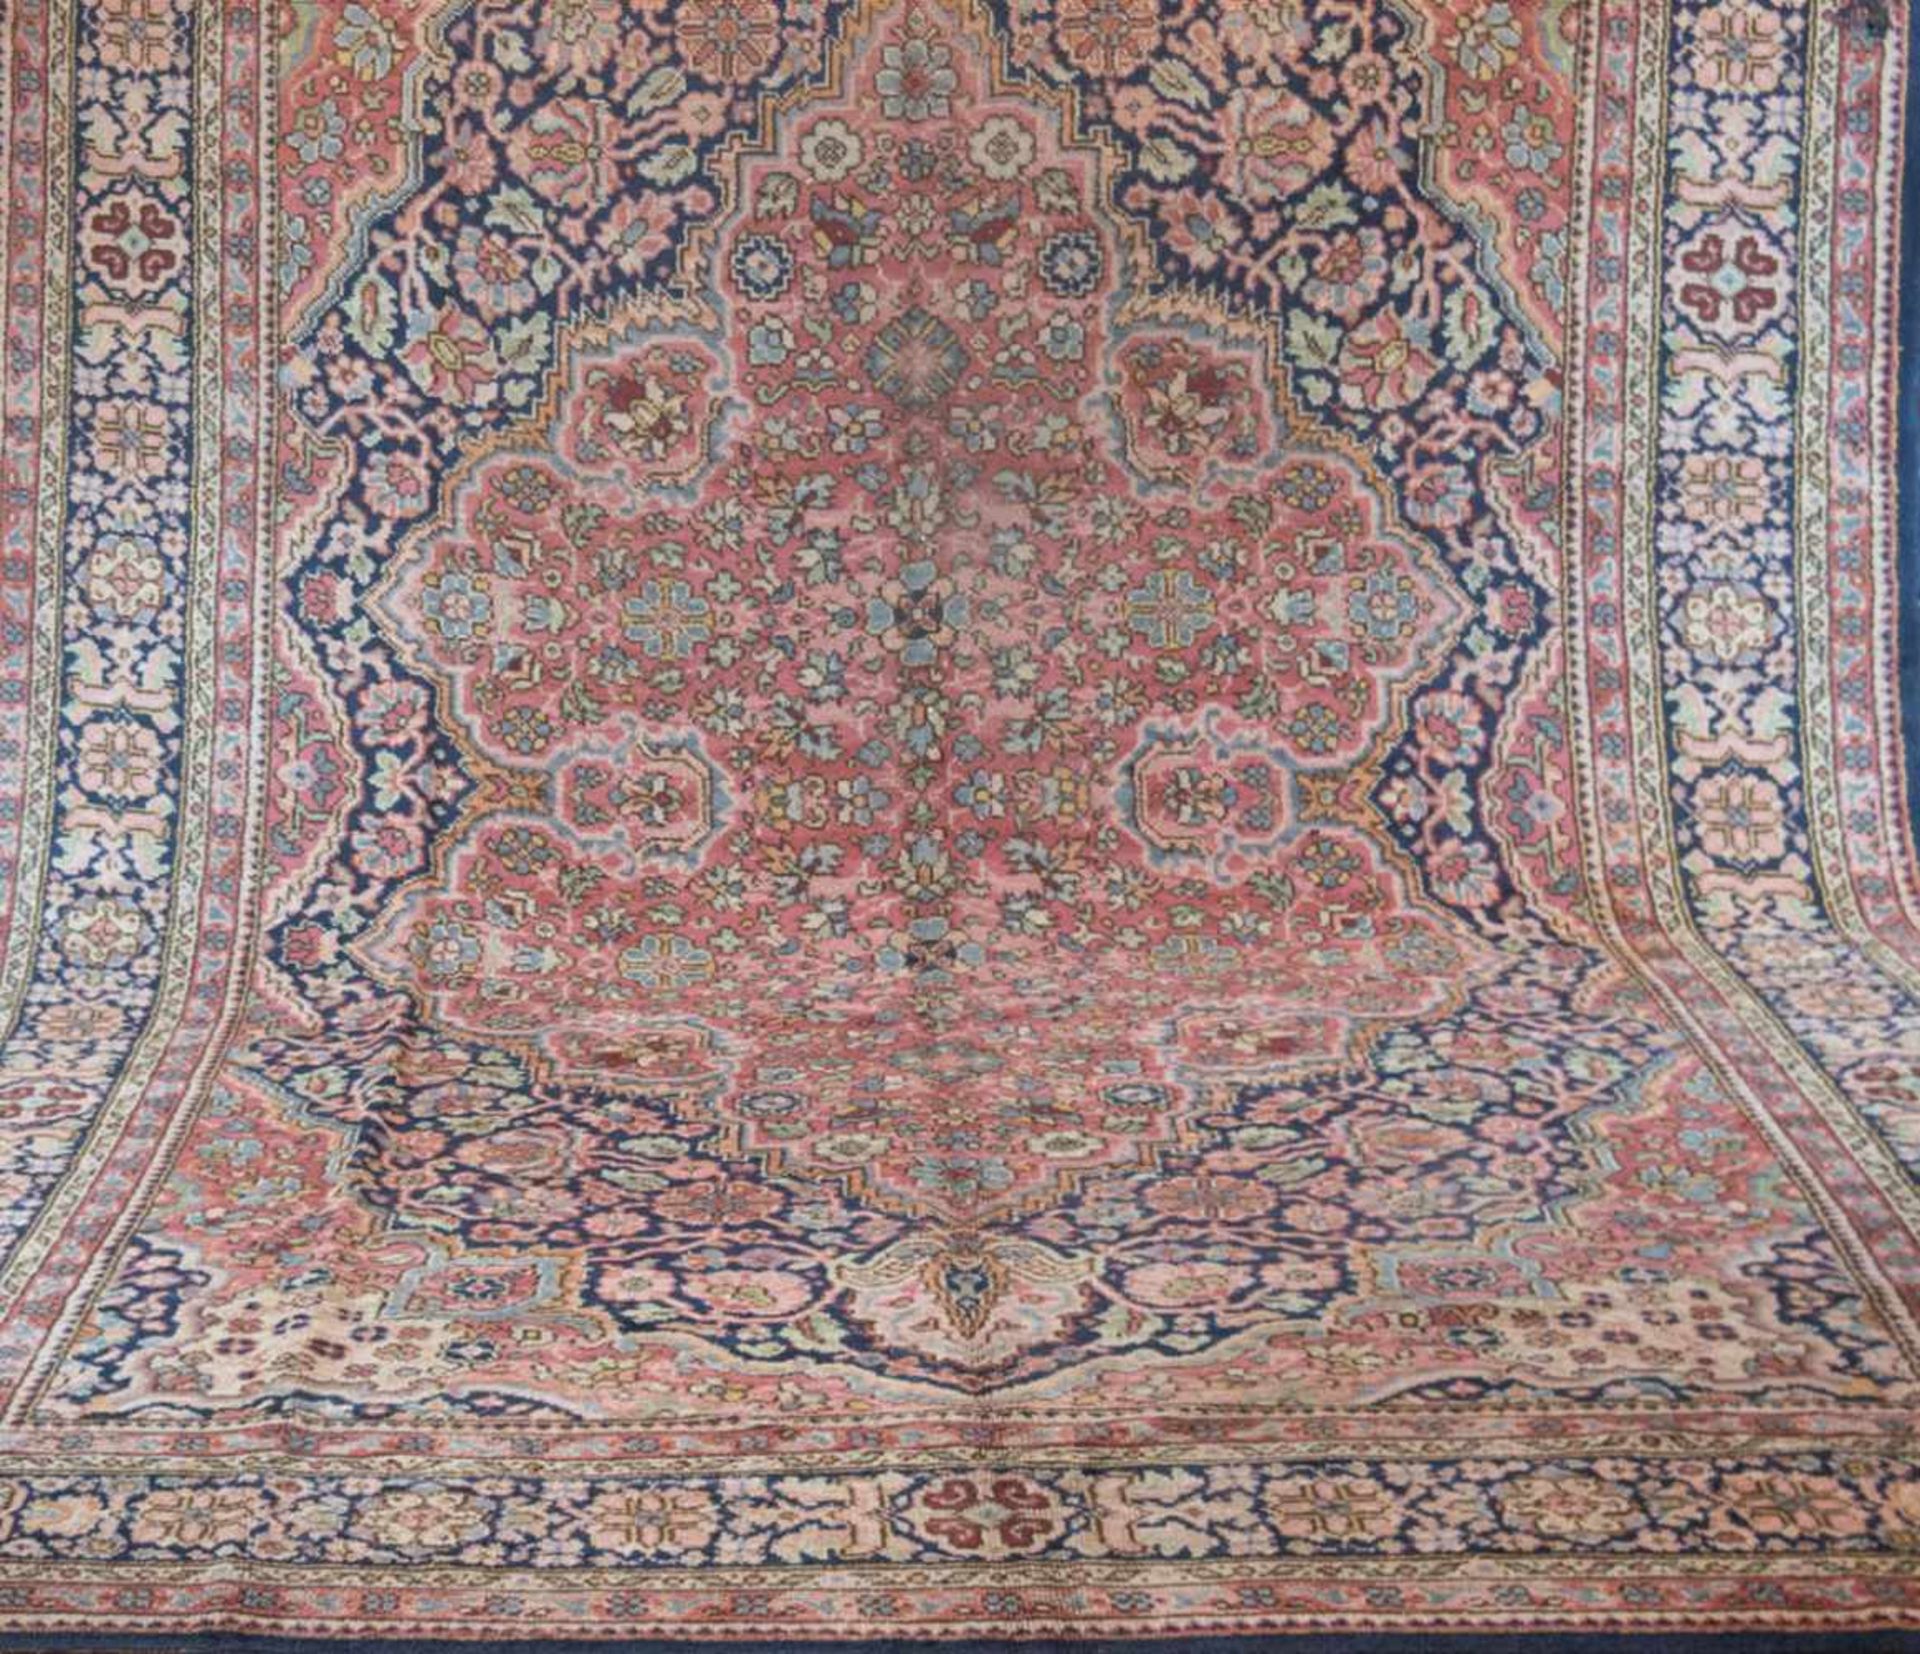 Europäischer Teppich, um 1900/20 rot/blaugrundig, mit zentralem Medaillon und floralenMotiven,